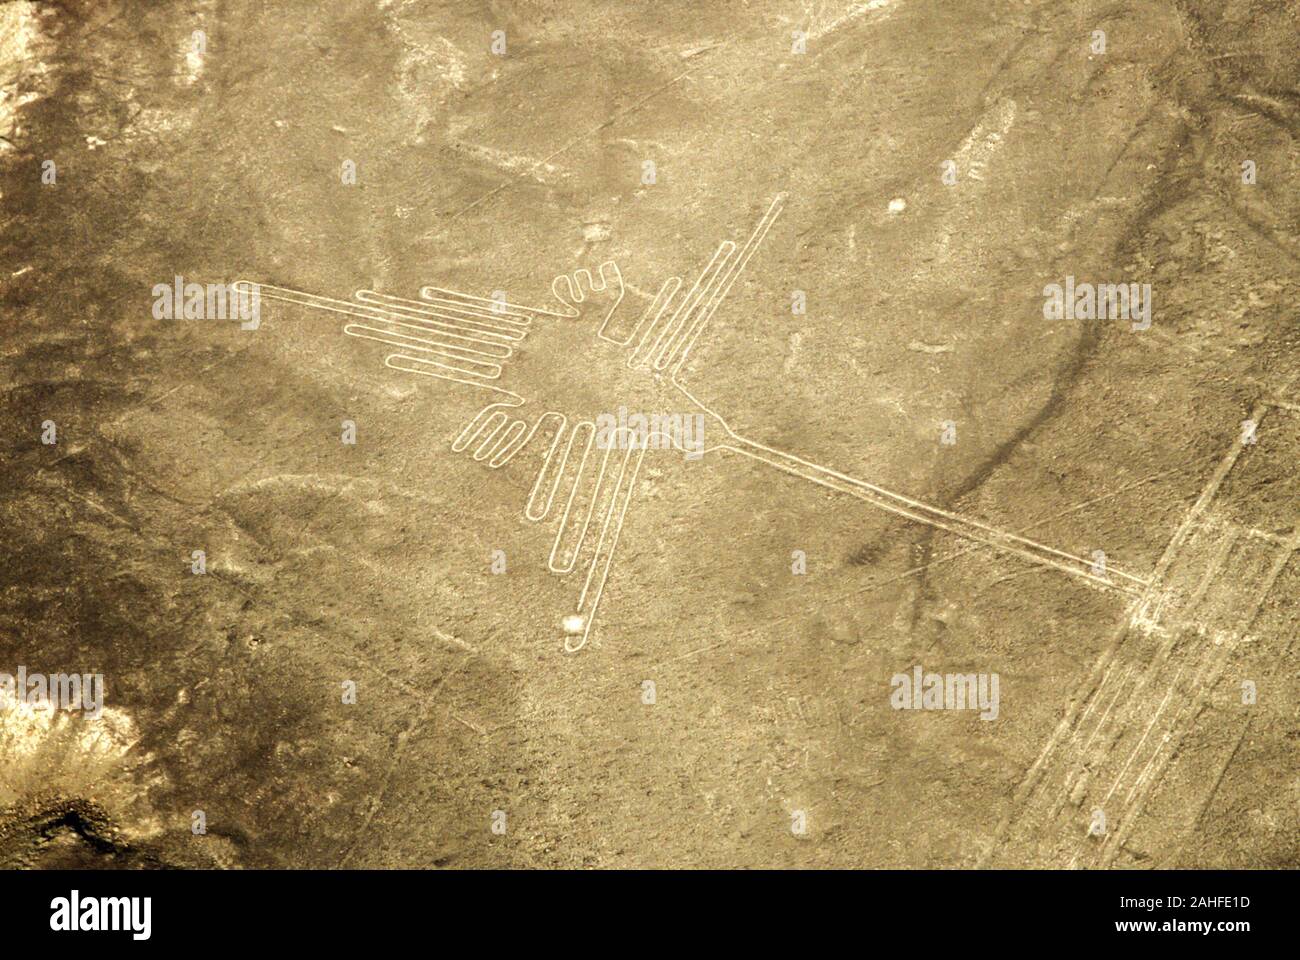 Vista aerea di un colibrì forma. Le linee di Nazca sono un gruppo molto grandi geoglifi formata da avvallamenti o poco profonde incisioni praticate nel suolo di Foto Stock